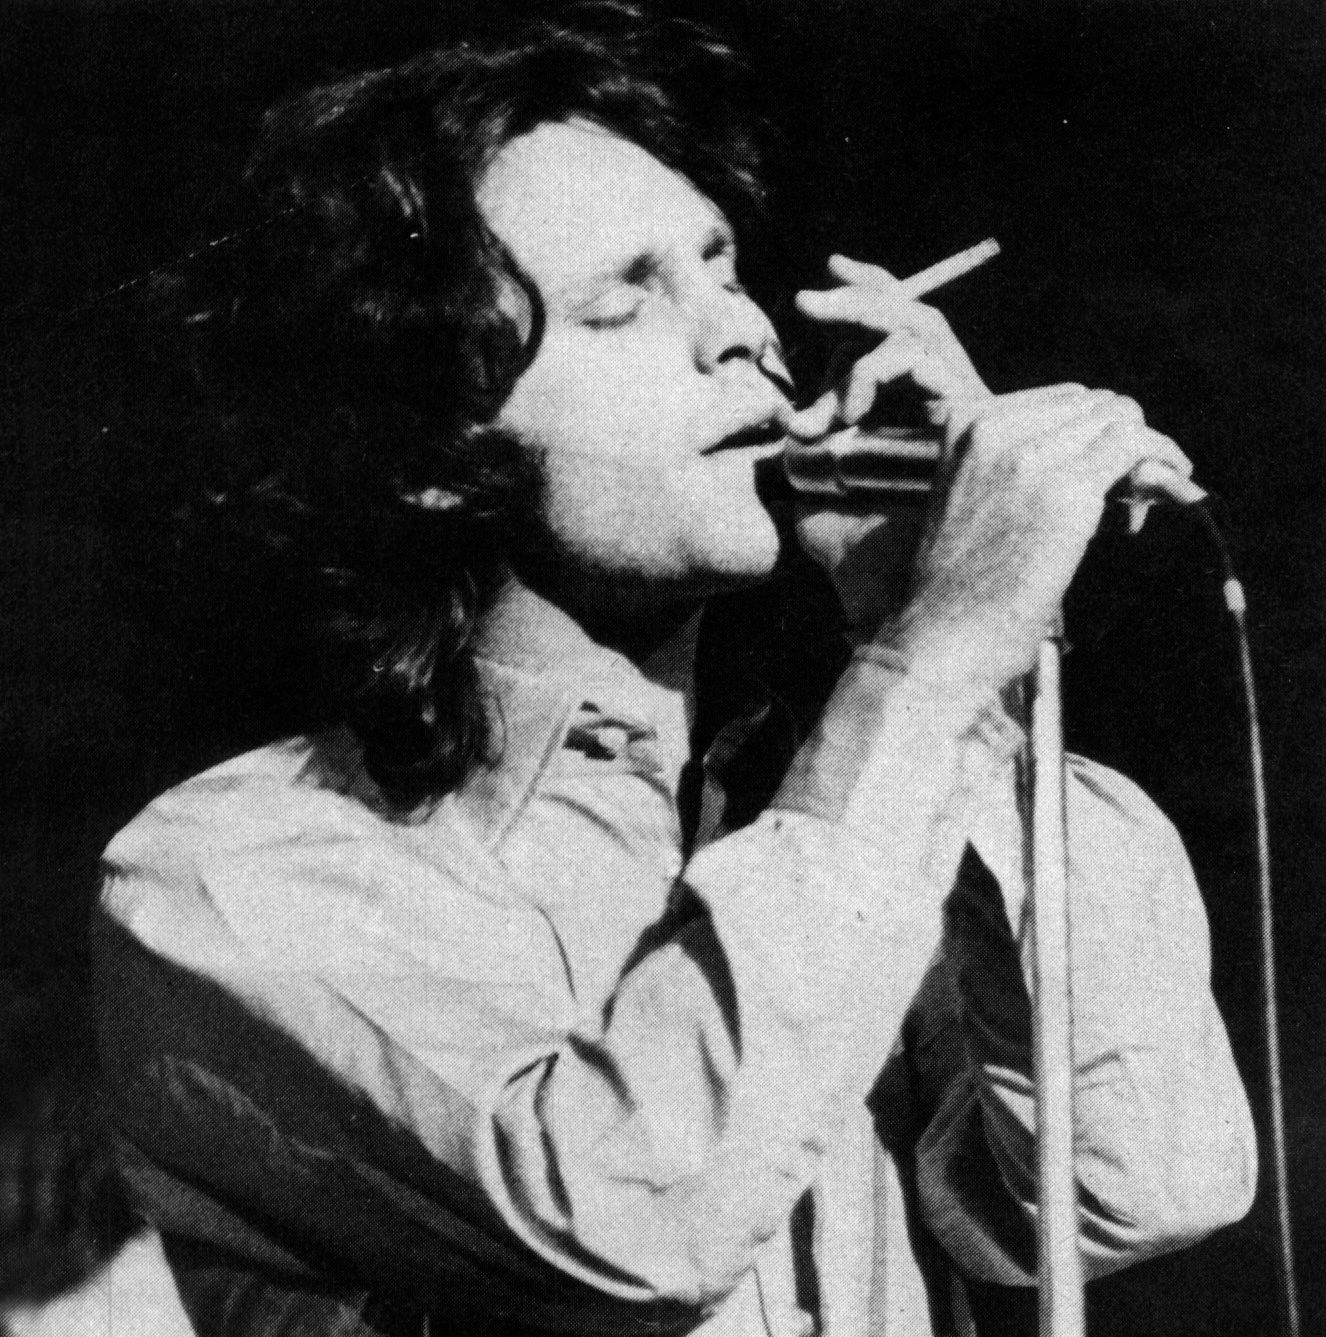 Iphone The Doors Wallpapers Hd, Desktop Backgrounds - Jim Morrison The Doors , HD Wallpaper & Backgrounds